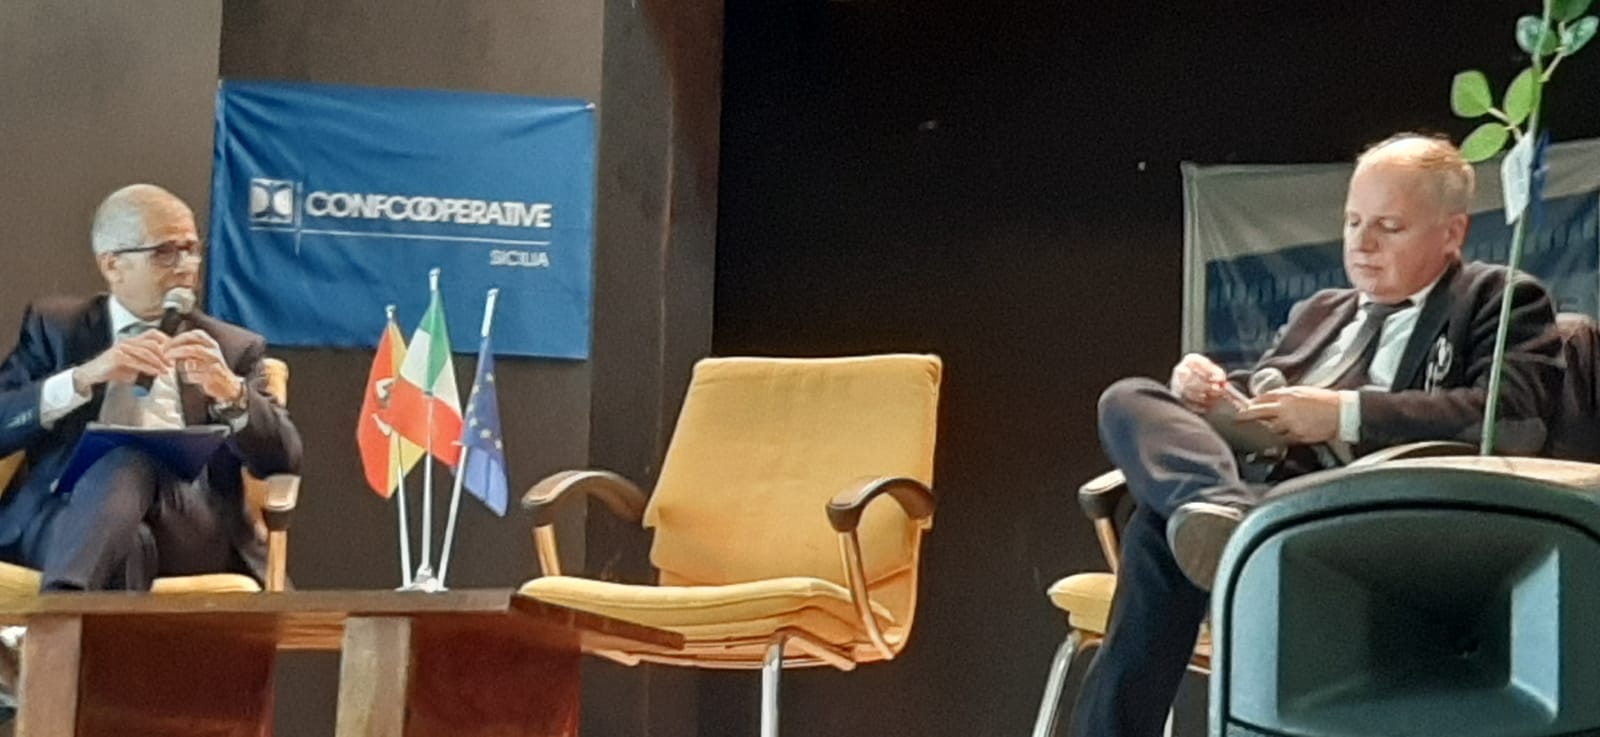 Incontro – dibattito sul tema “Autonomia Differenziata” promosso dal Comitato provinciale di Caltanissetta di Confcooperative Sicilia